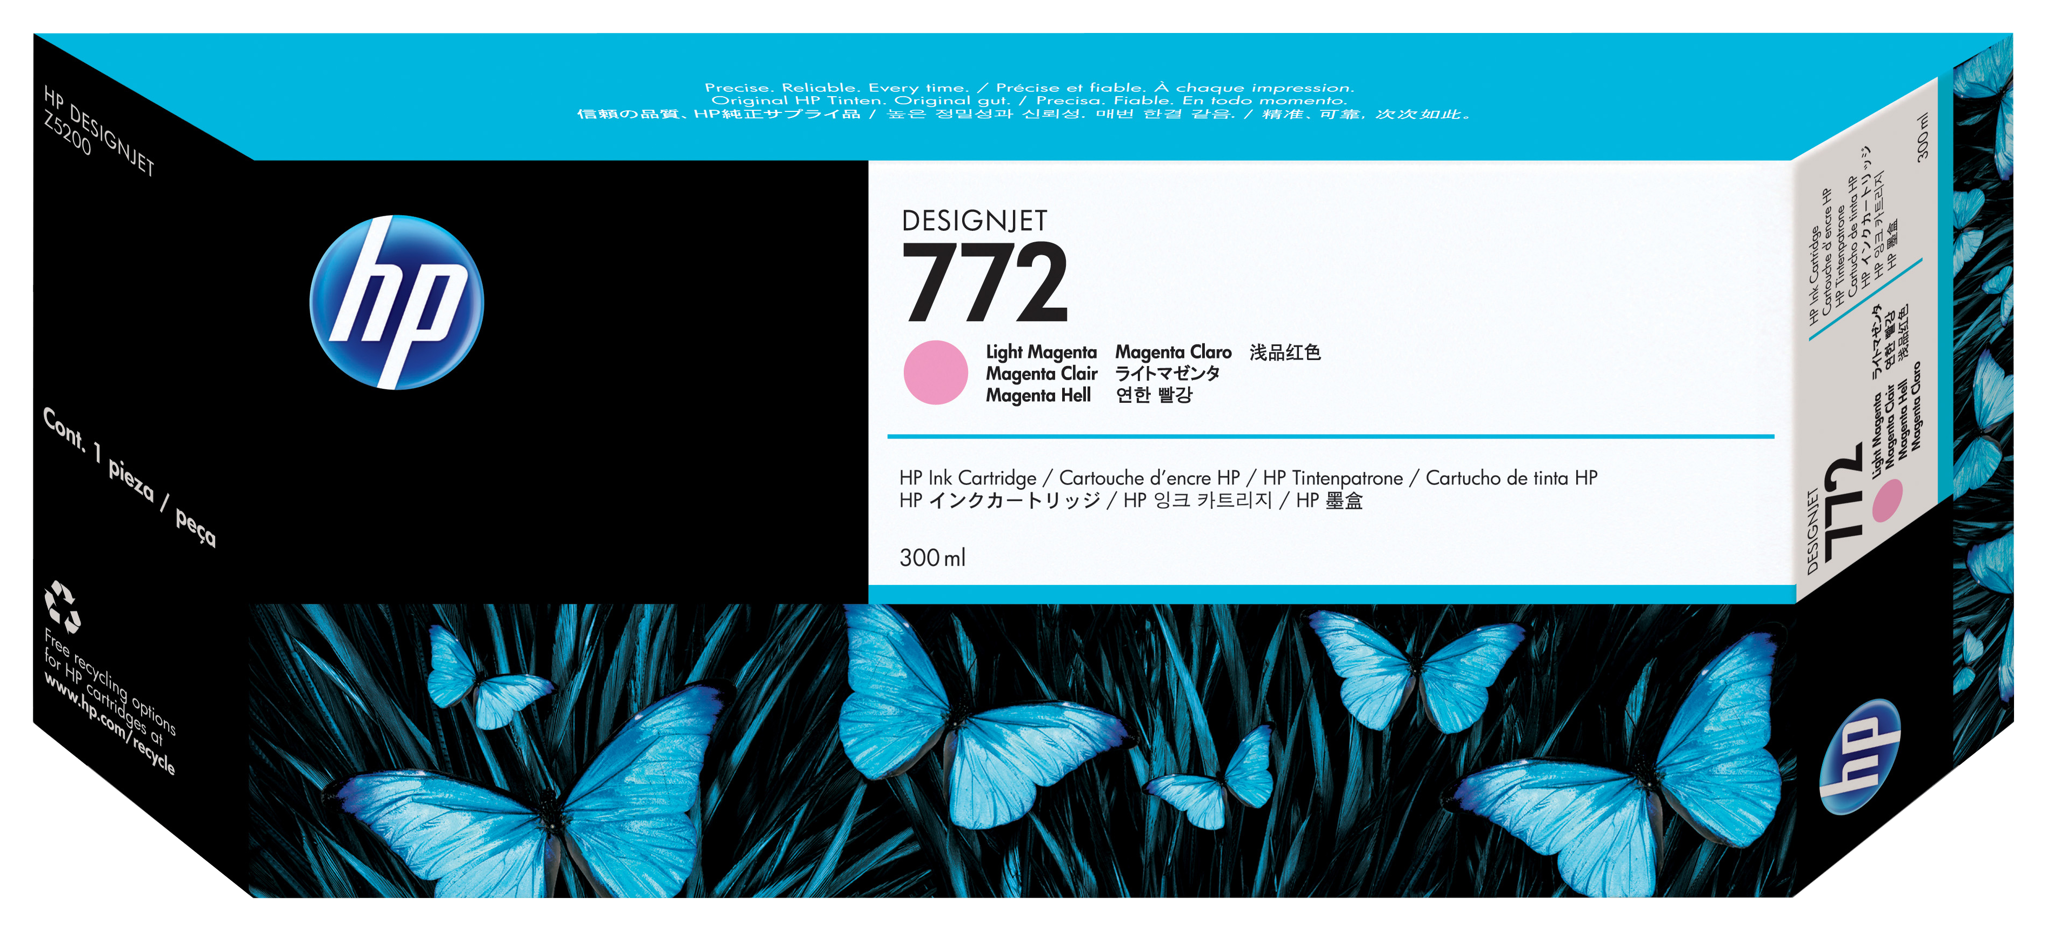 Bild von HP 772 Magenta hell DesignJet Druckerpatrone - 300 ml - Tinte auf Pigmentbasis - 300 ml - 1 Stück(e)